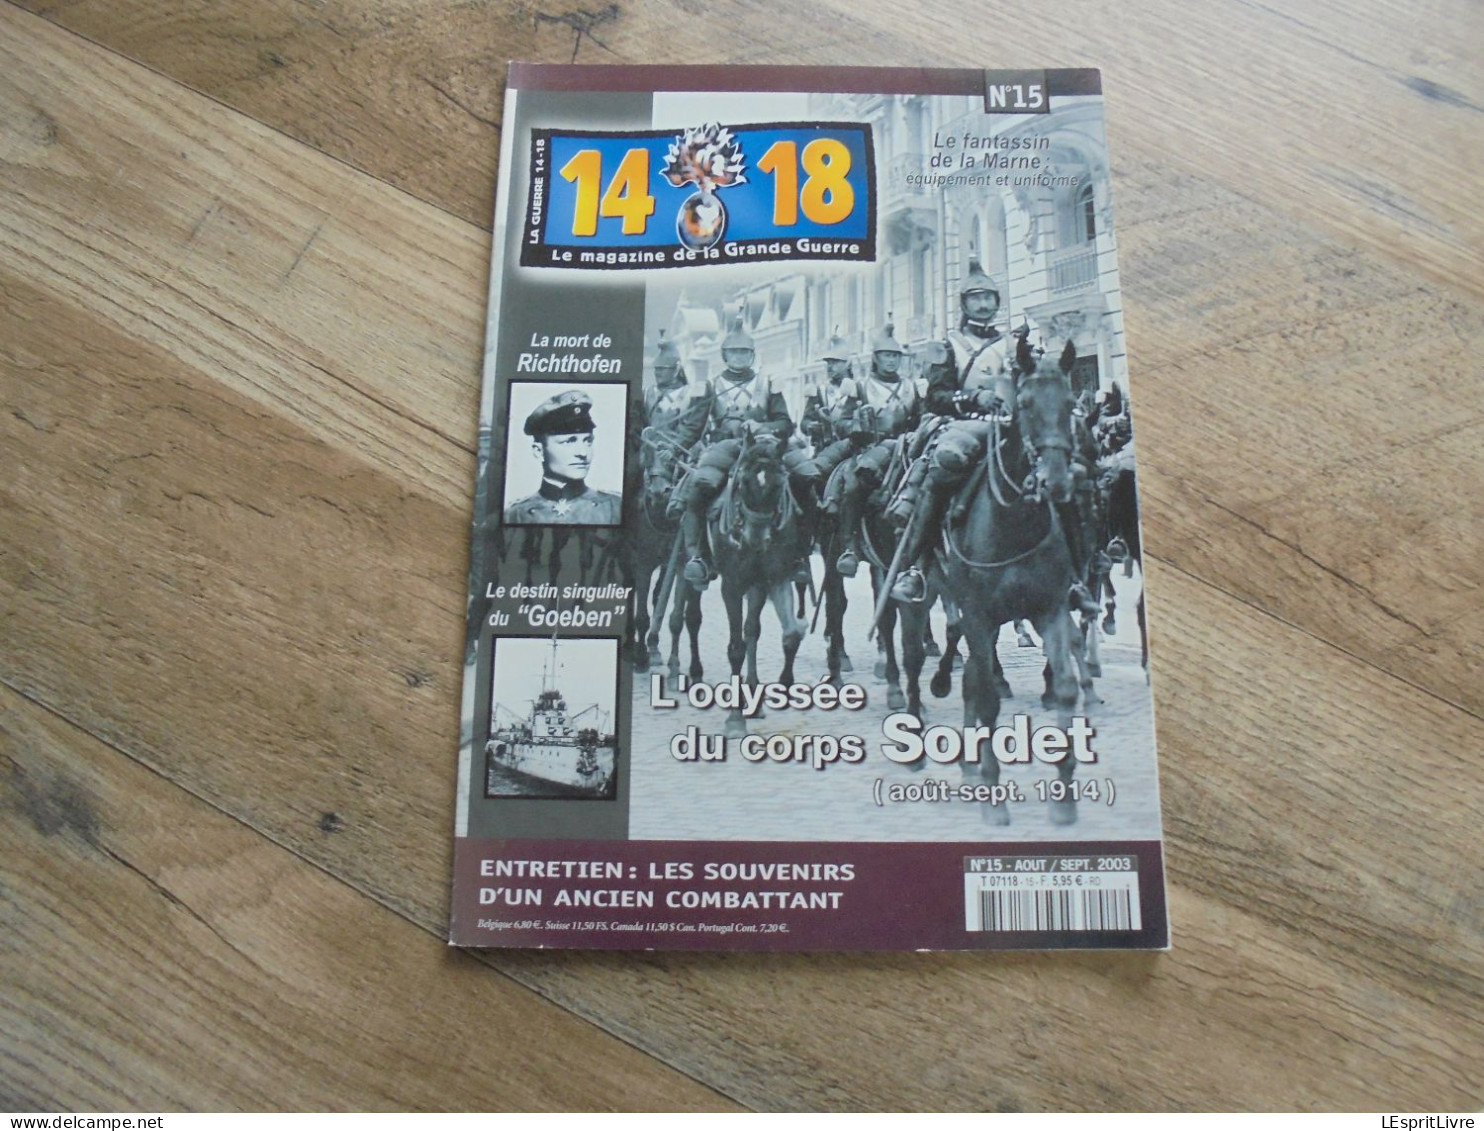 14 18 Le Magazine De La Grande Guerre N° 15 Cavalerie Sordet Baron Rouge Von Richtofen Fokker Goeben Artisanat Tranchée - Guerre 1914-18